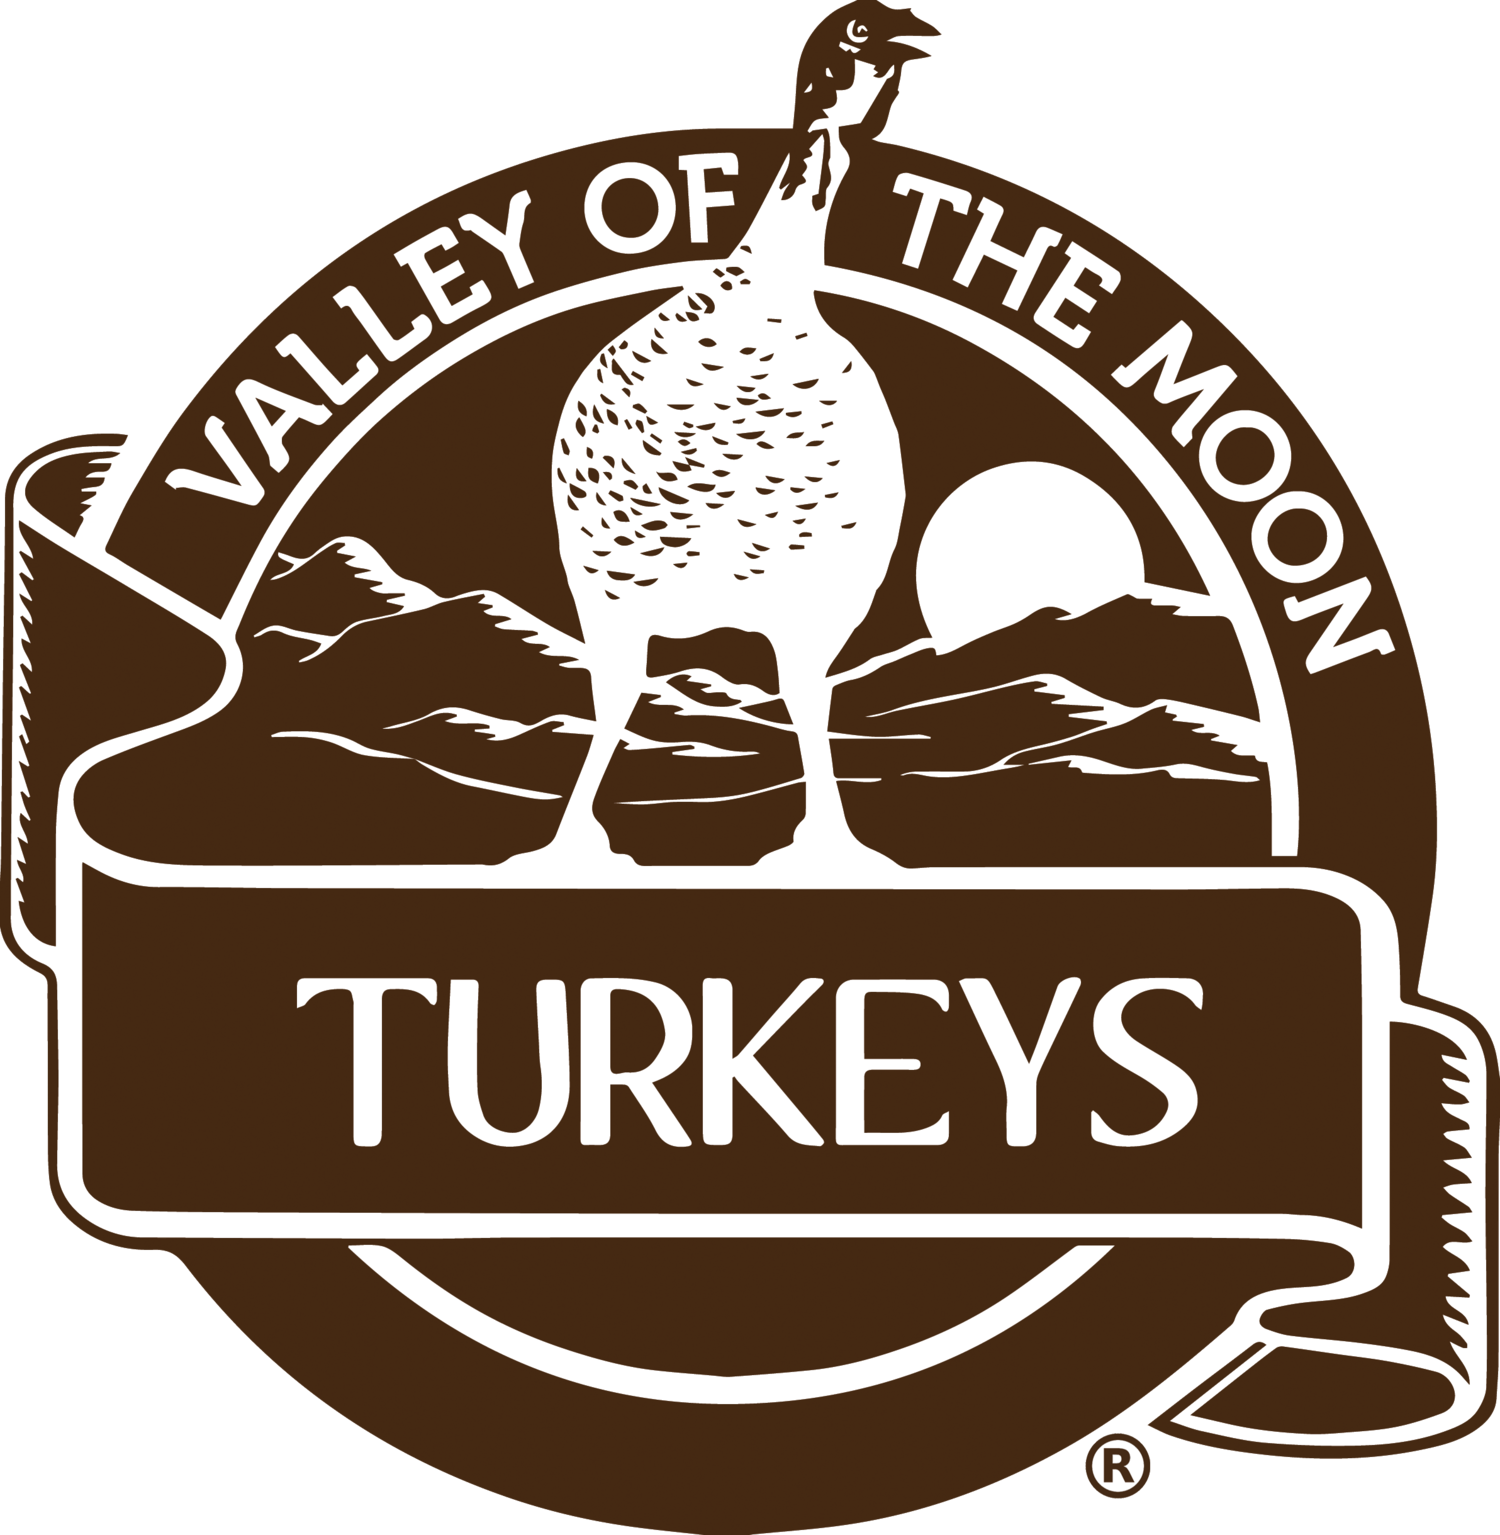 Valley of the Moon Turkeys